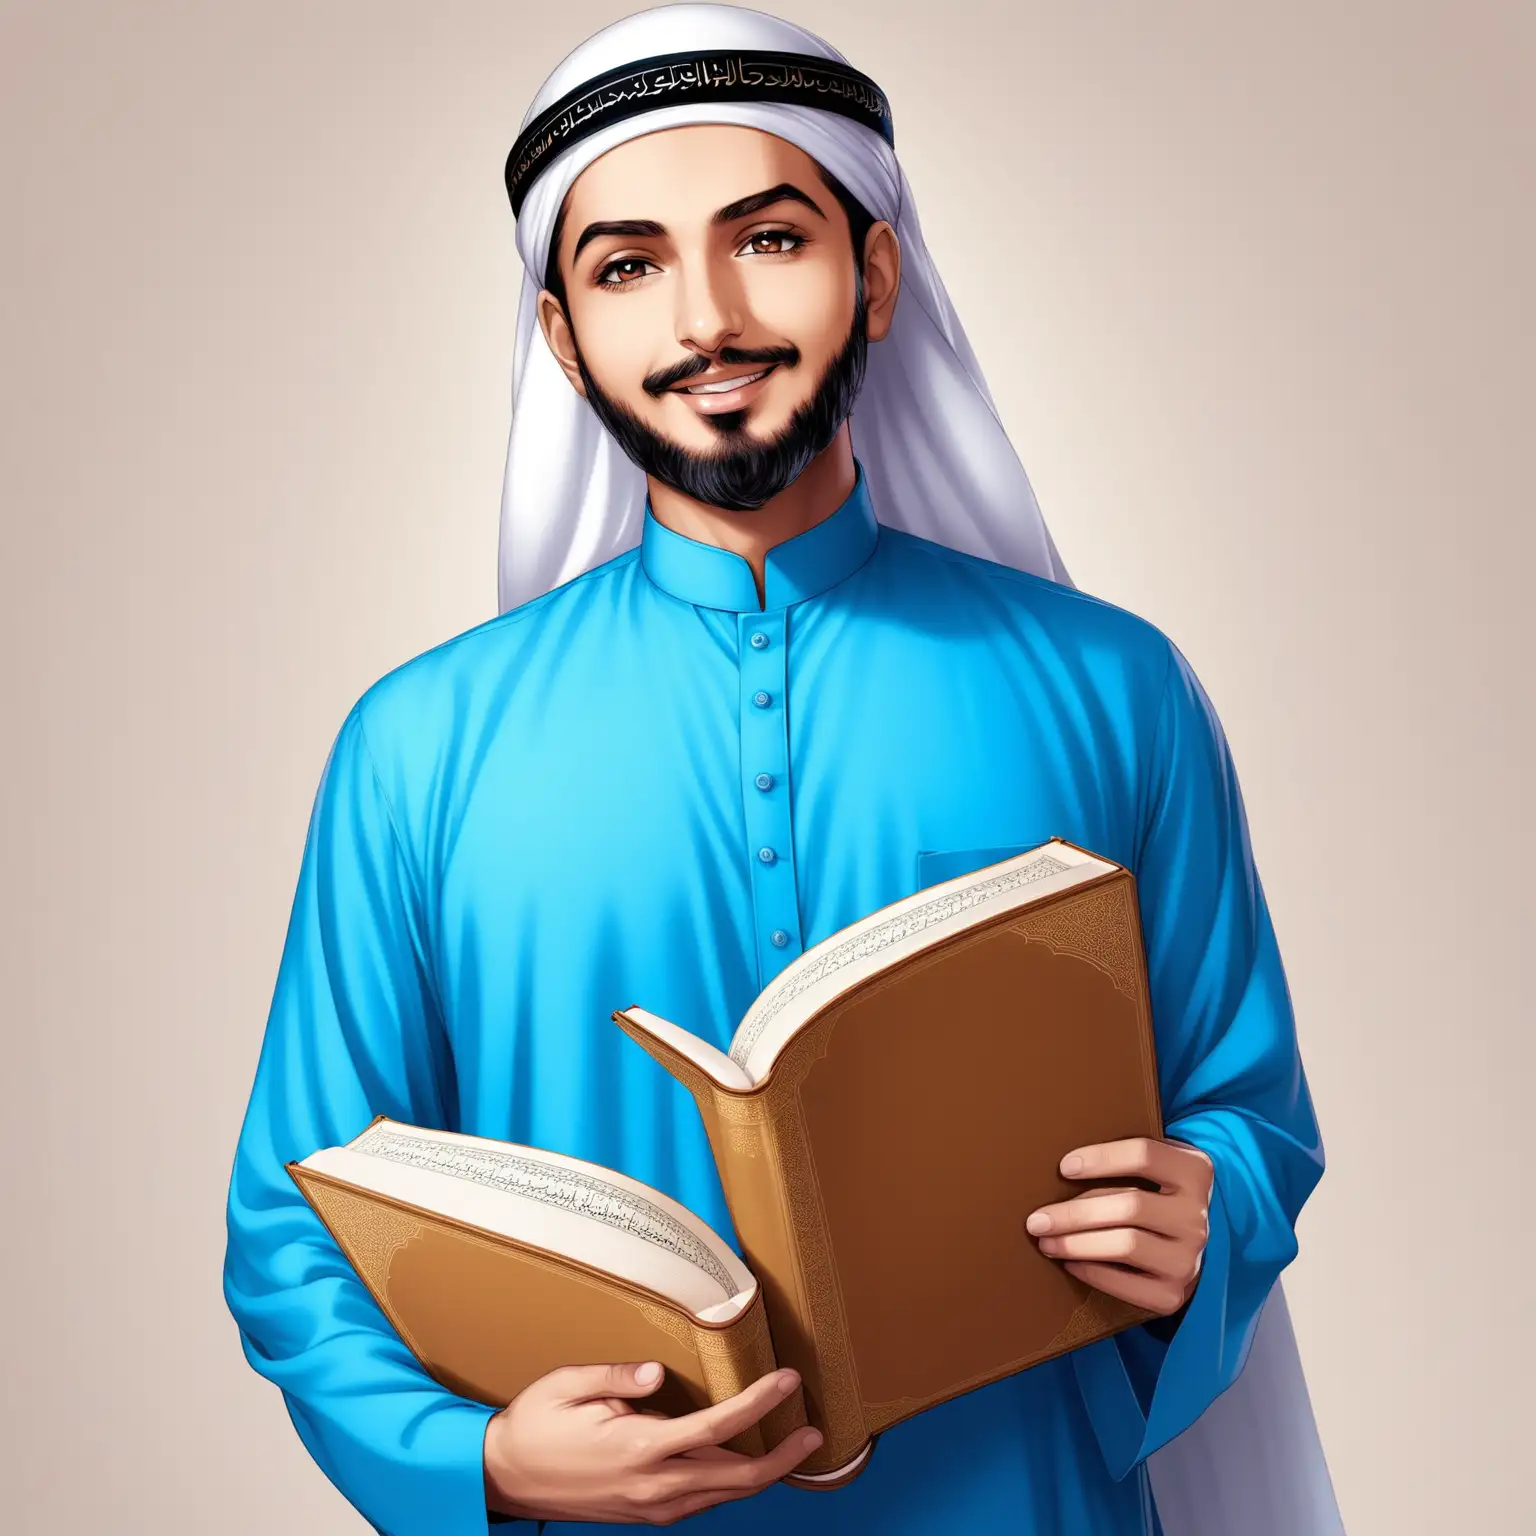 quran sheikh teacher wearing blue shirt